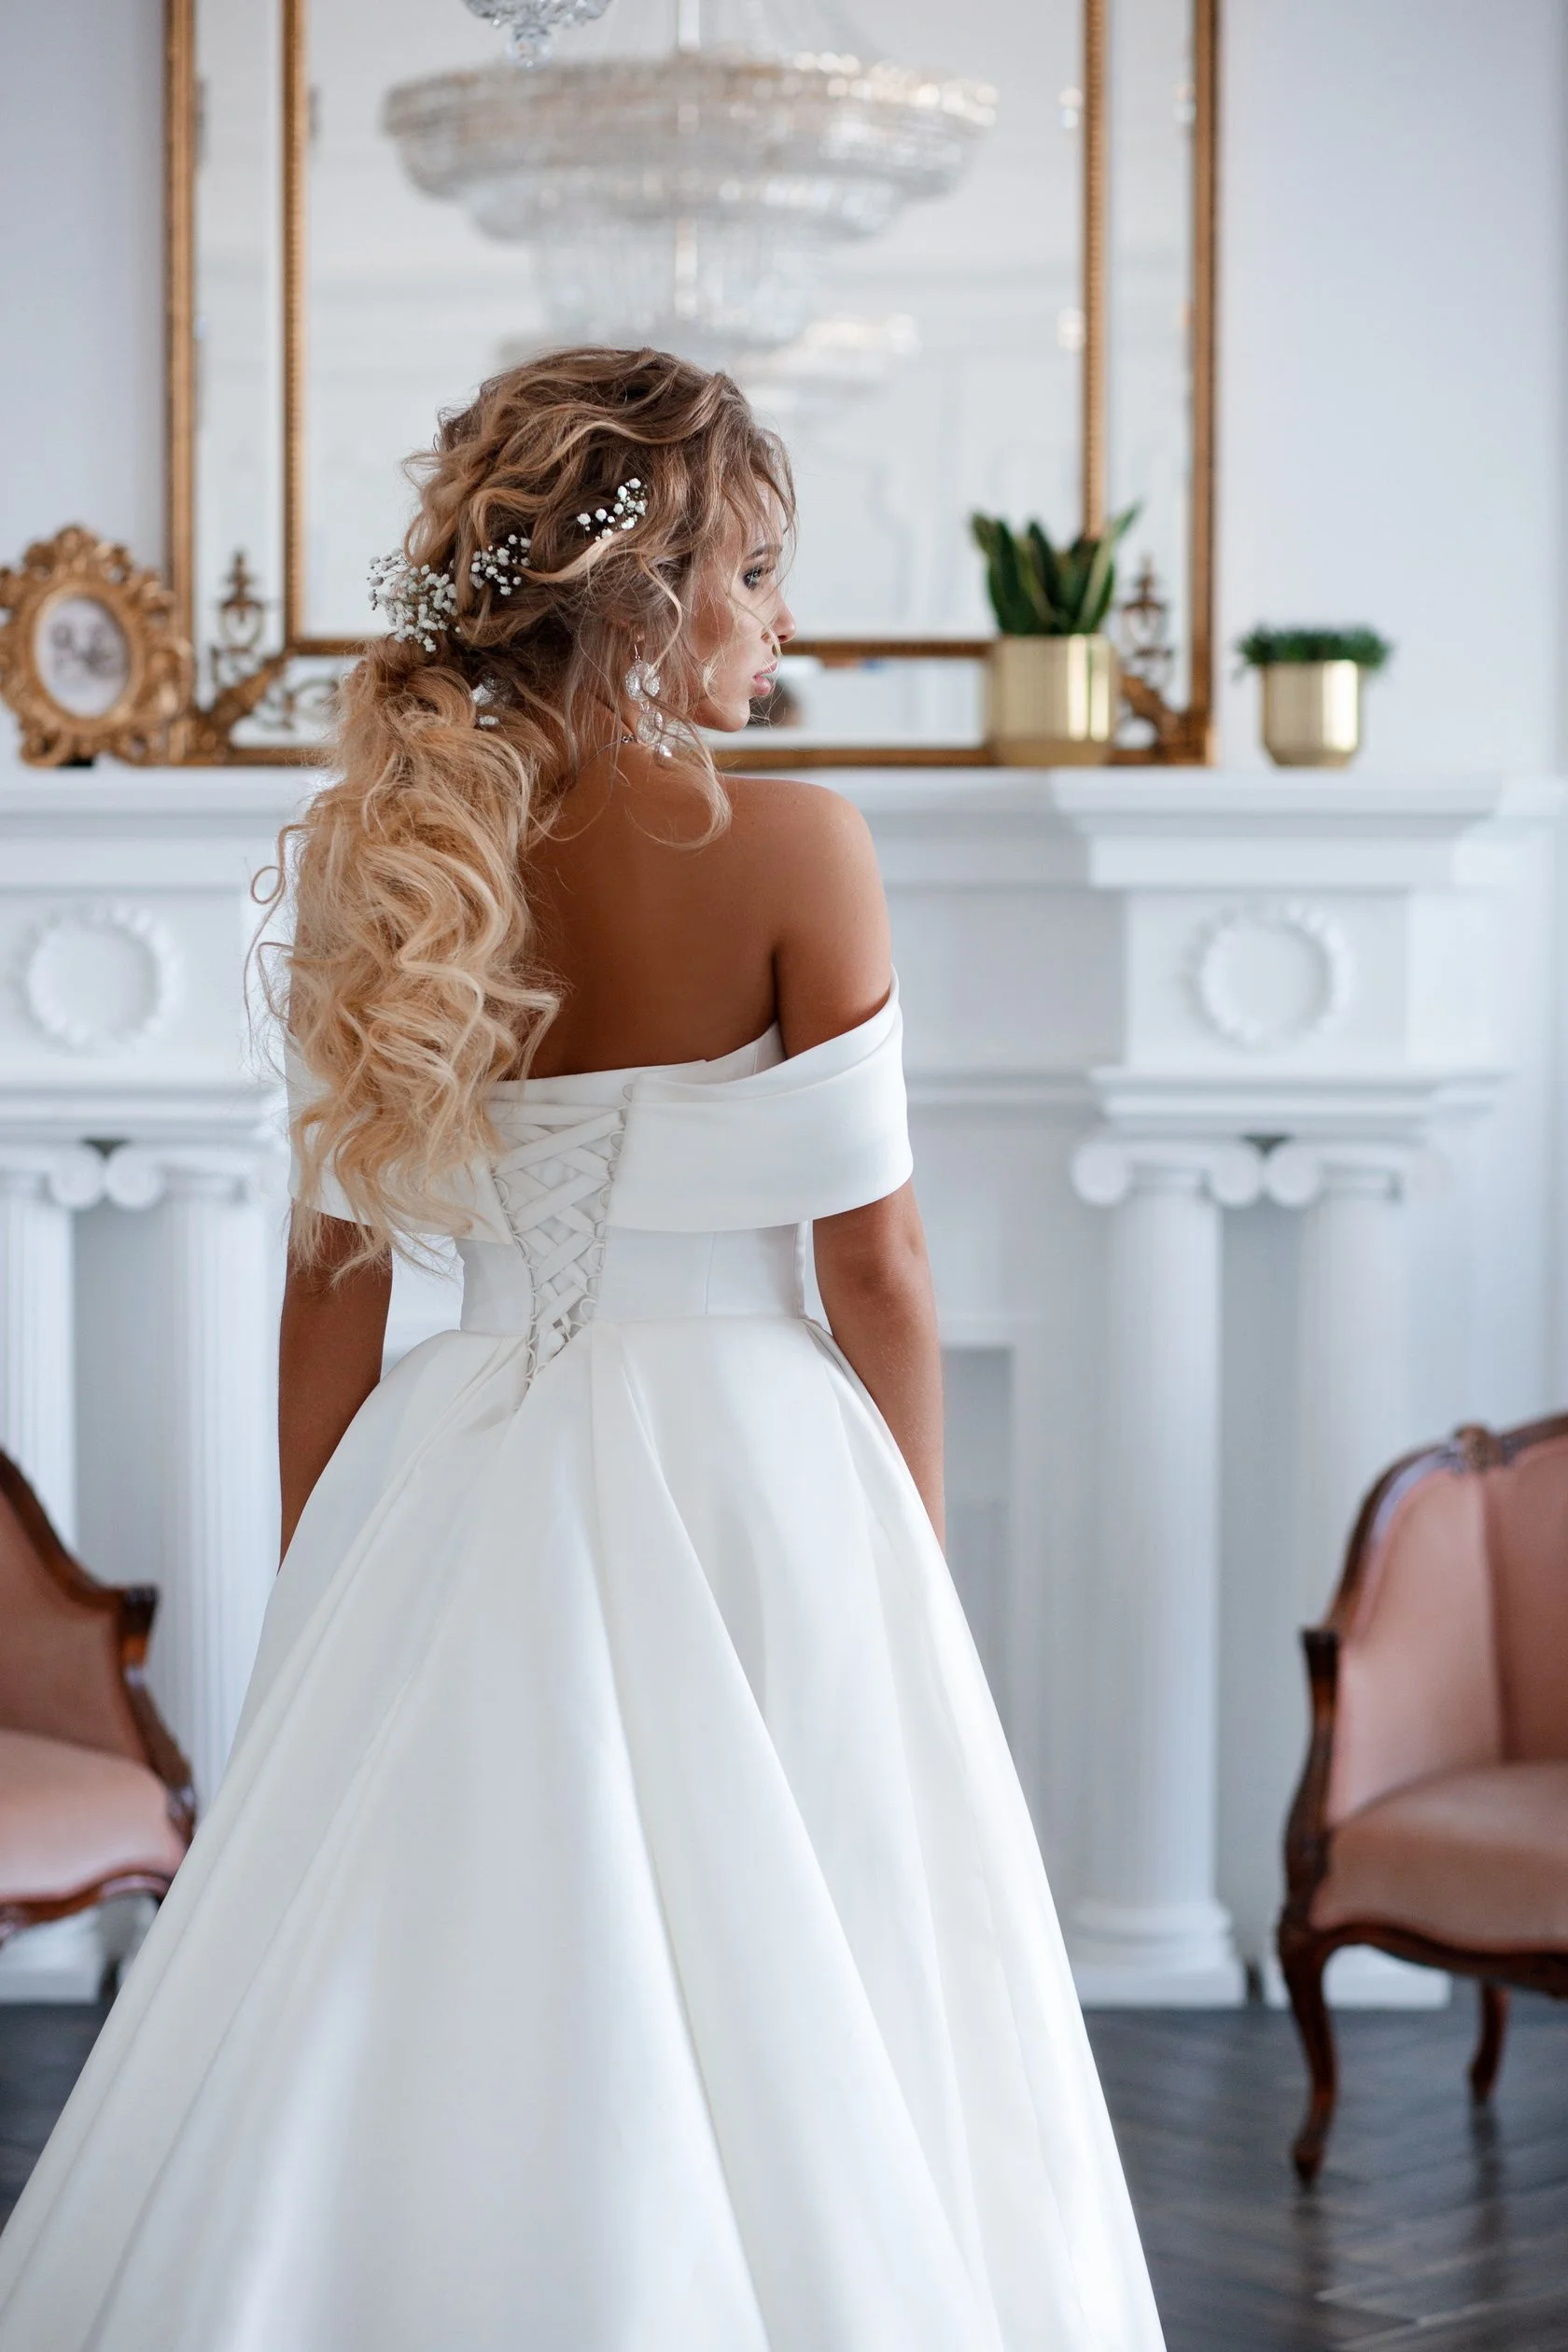 Весільні зачіски 2019: фото кращих варіантів укладок для нареченої - фото 438891